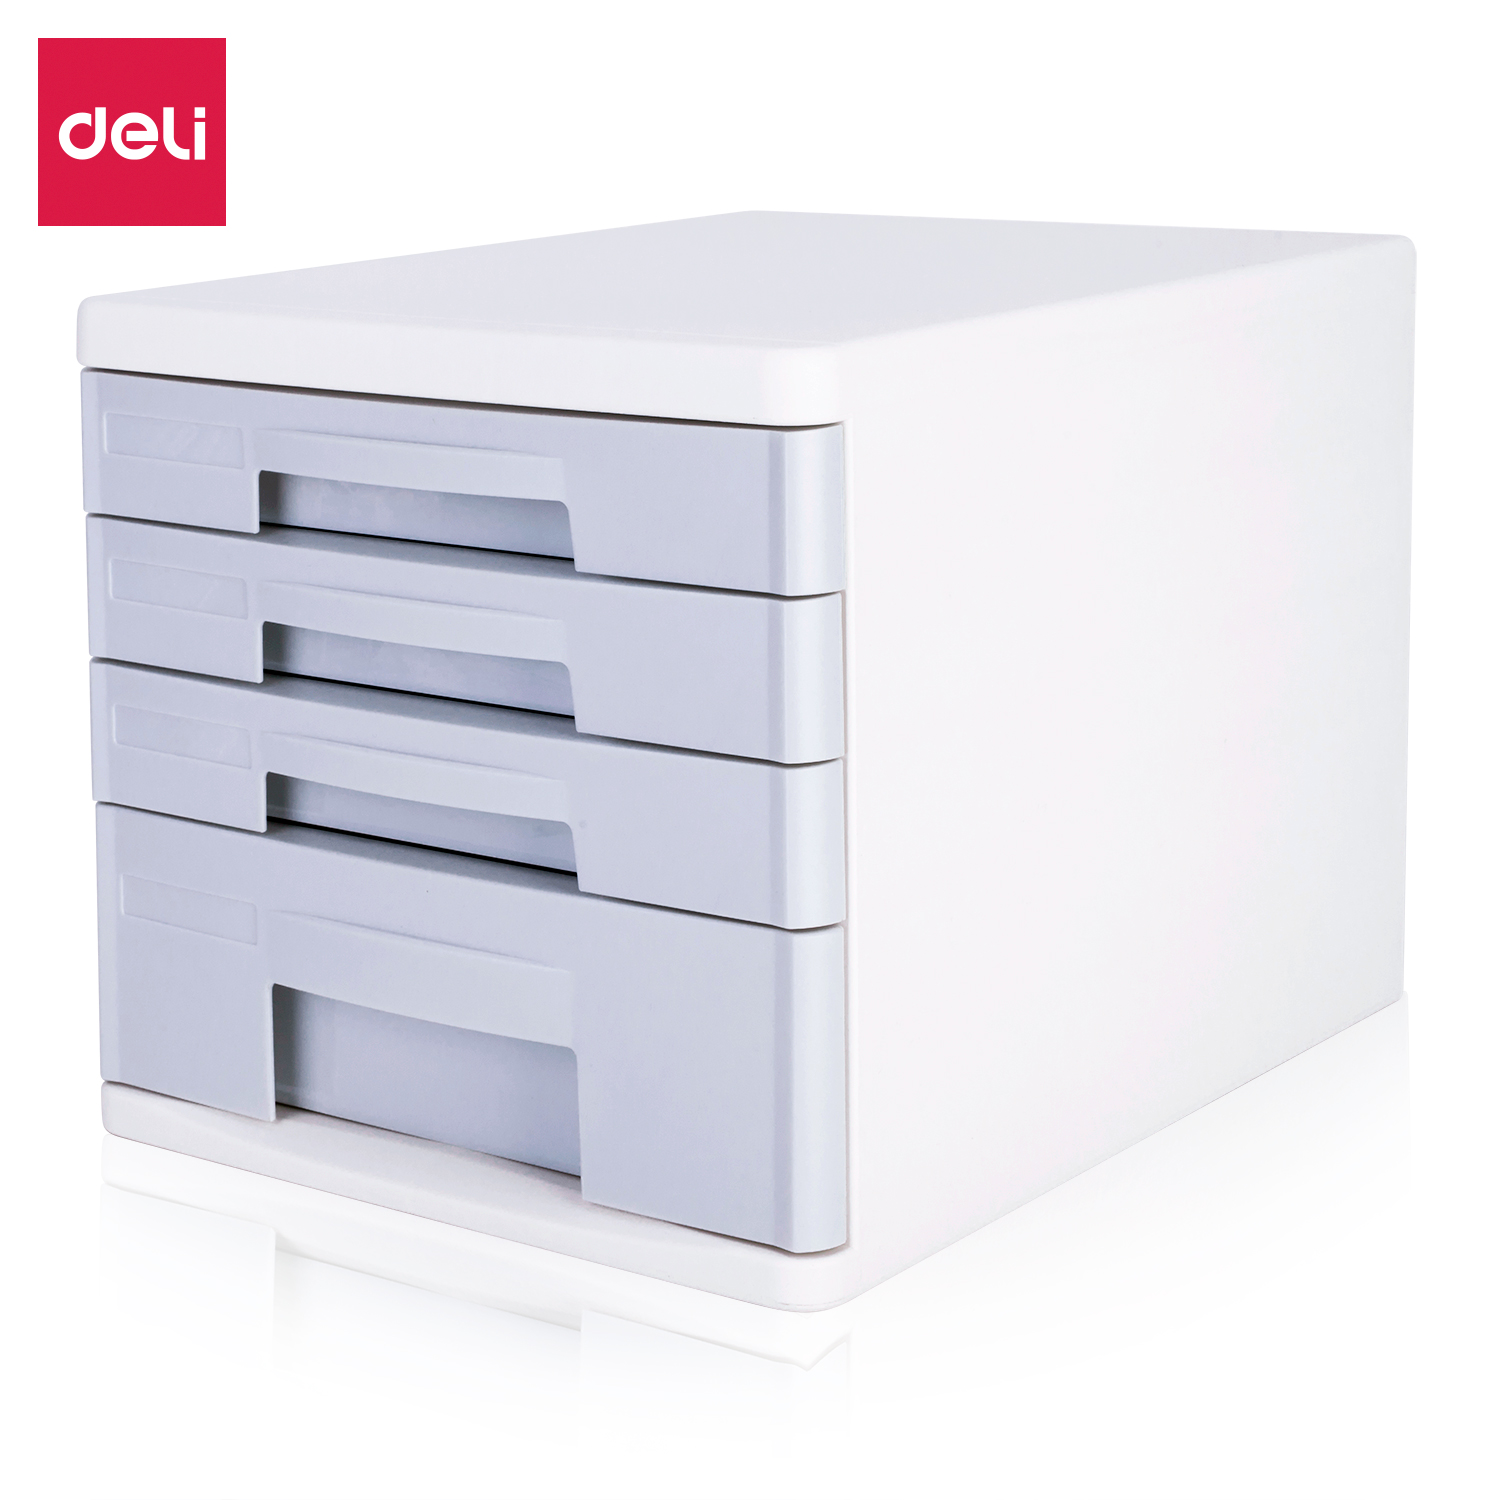 Deli-9761 File Cabinet